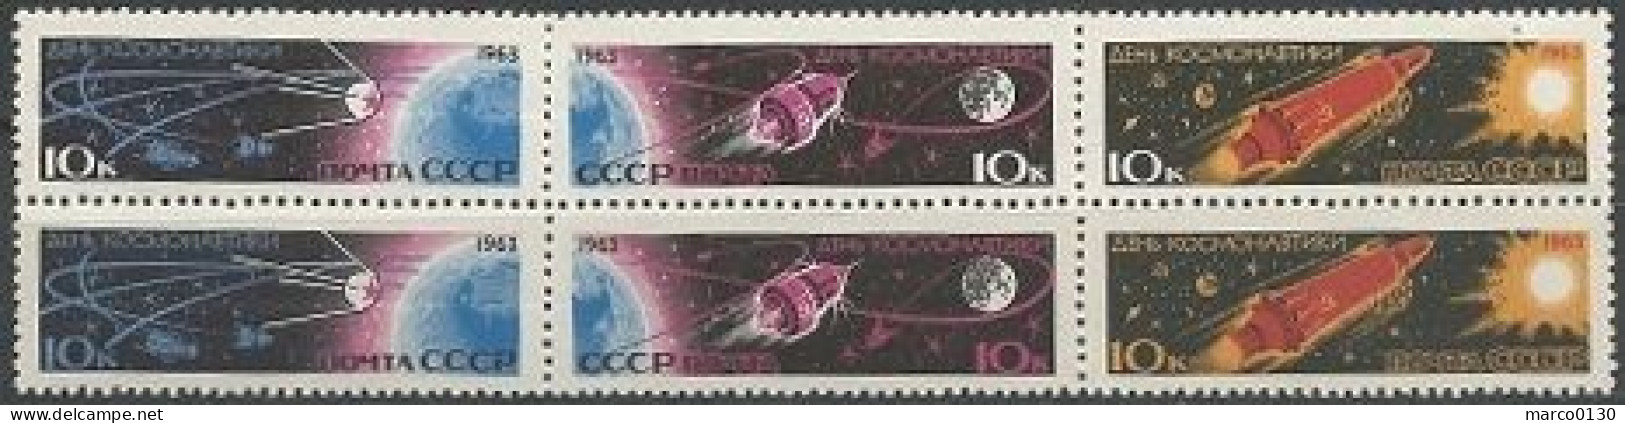 RUSSIE N° 2656 + N° 2657 + N° 2658 N° 2659 + N° 2660 + N° 2661 NEUF - Unused Stamps